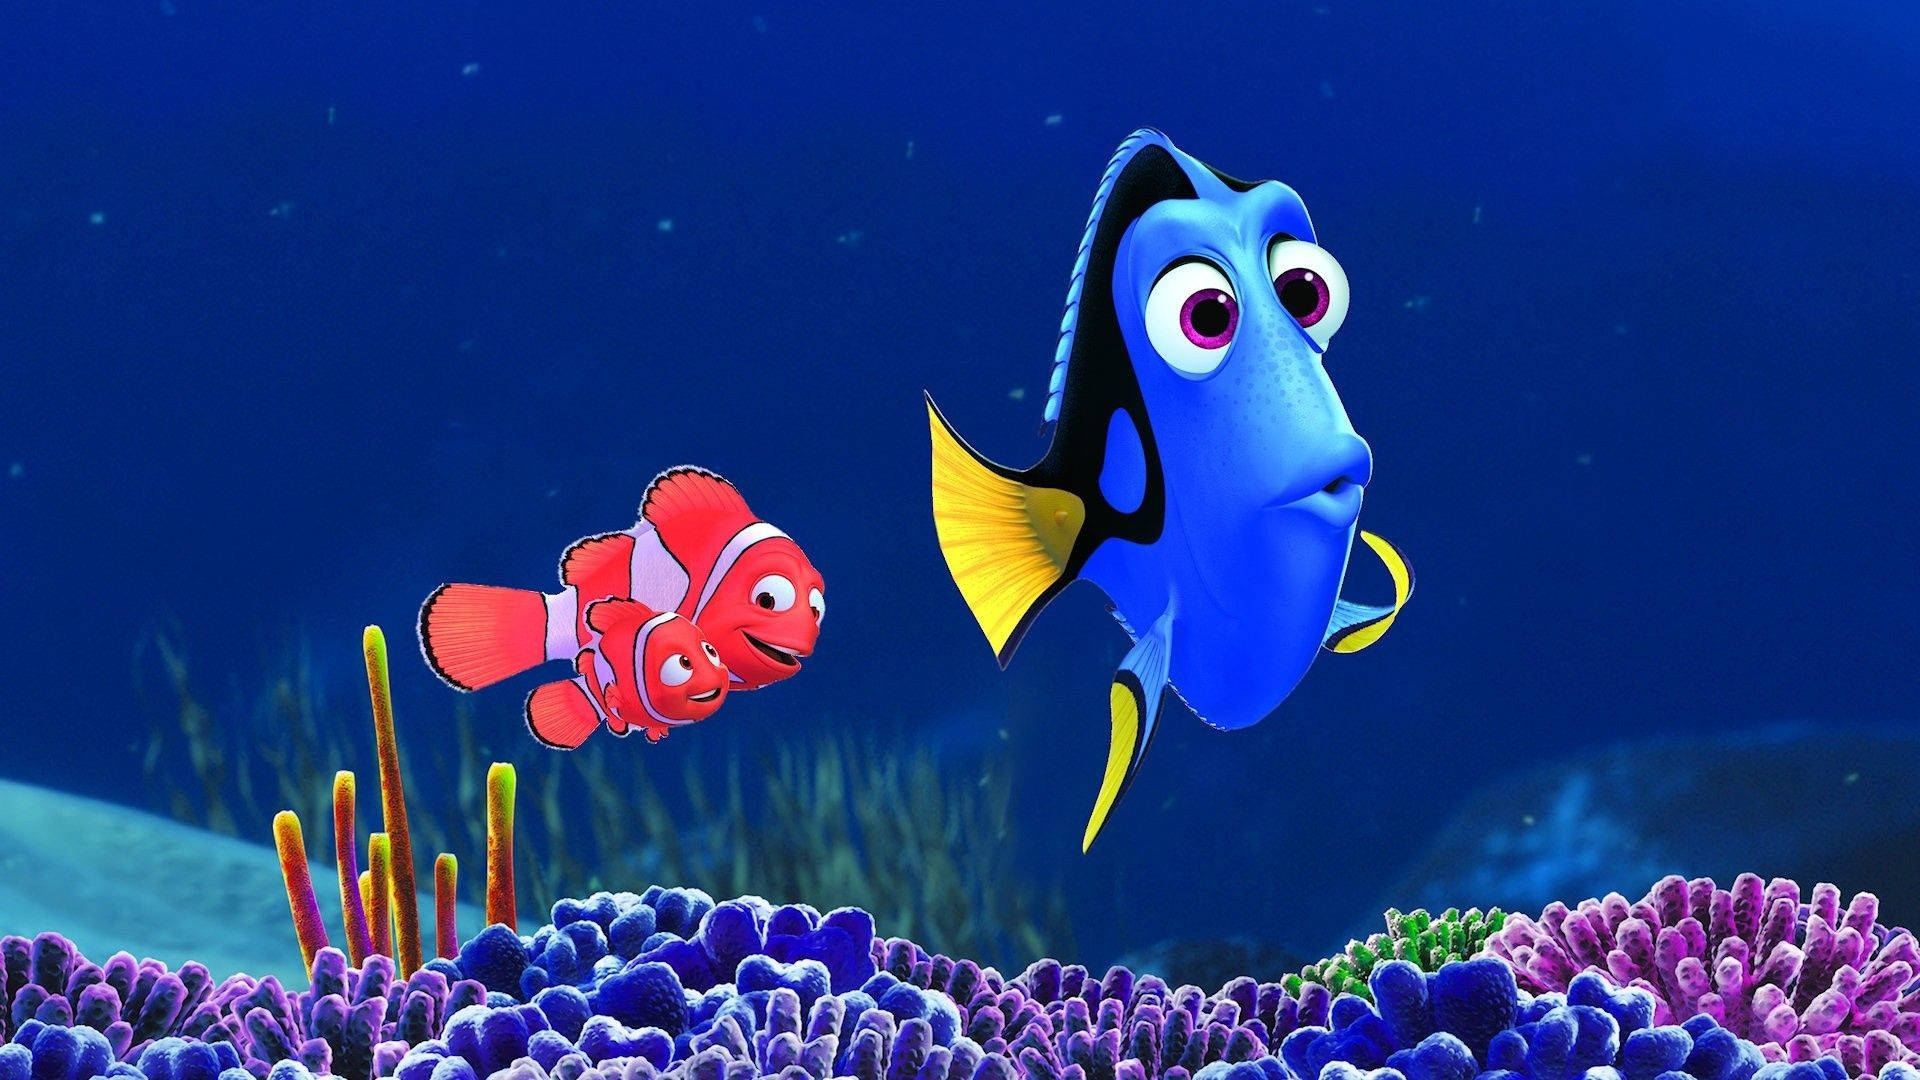 Disneyskrivbordet Nemo Och Dory. Wallpaper